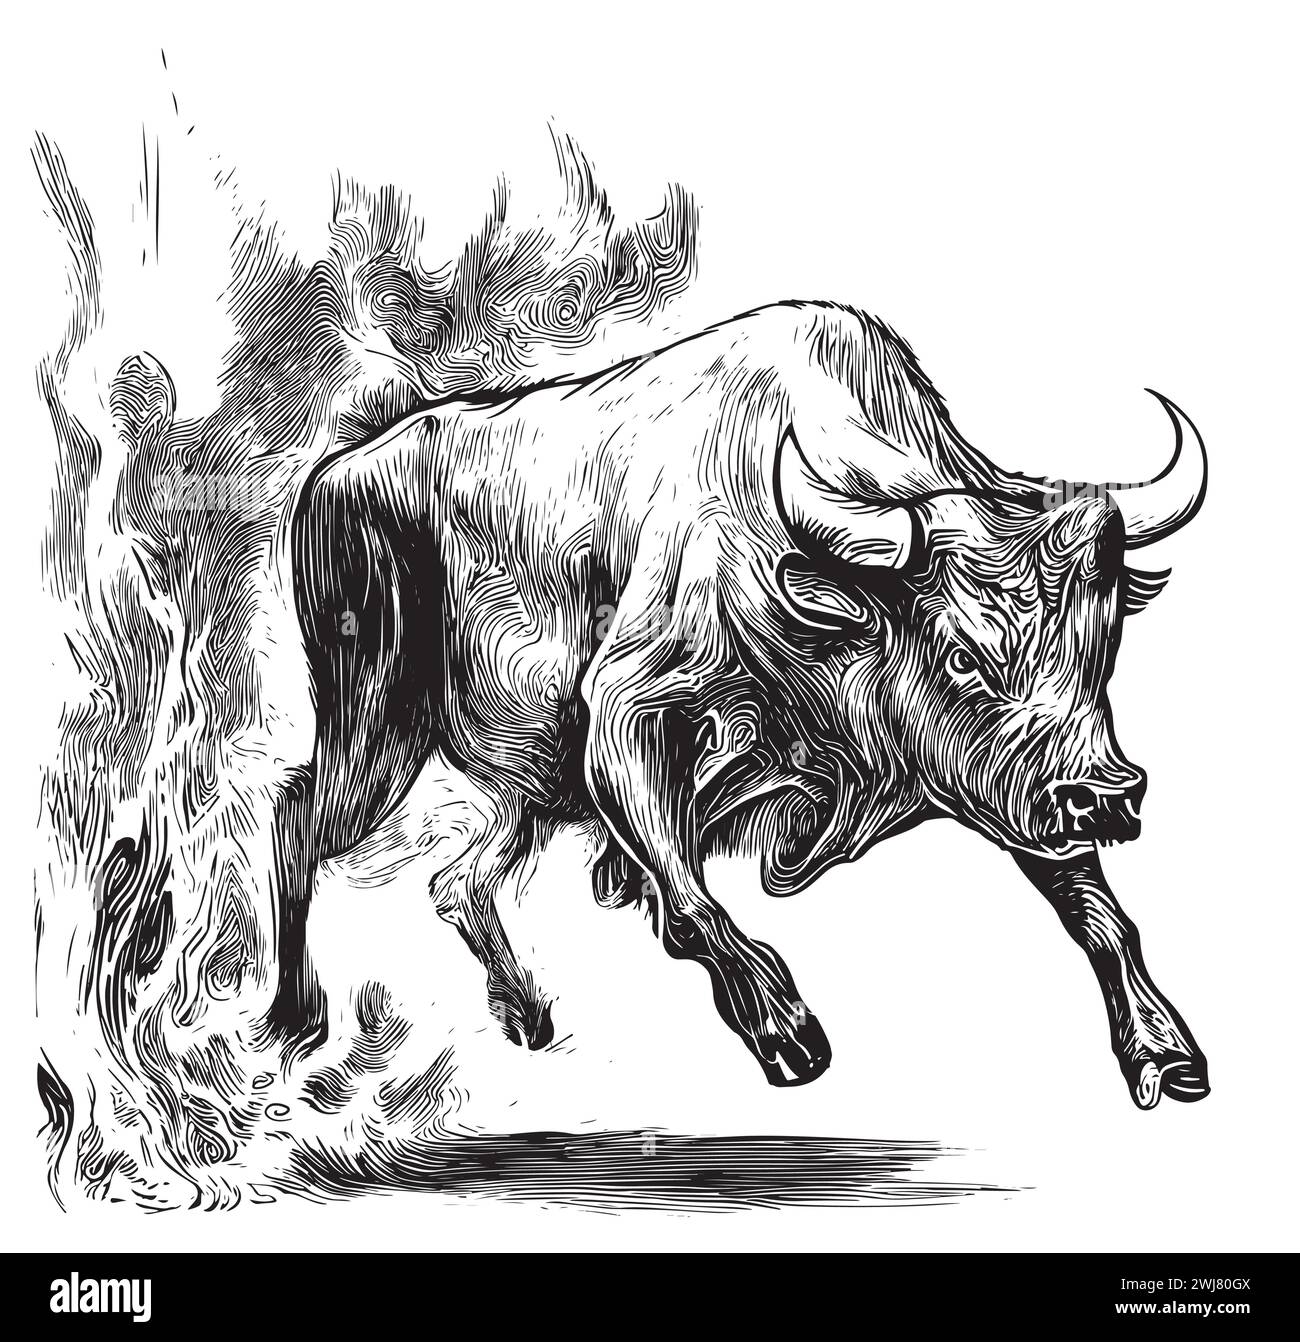 Toro enojado corriendo en fuego dibujado a mano dibujo ilustración vectorial. Ilustración del Vector